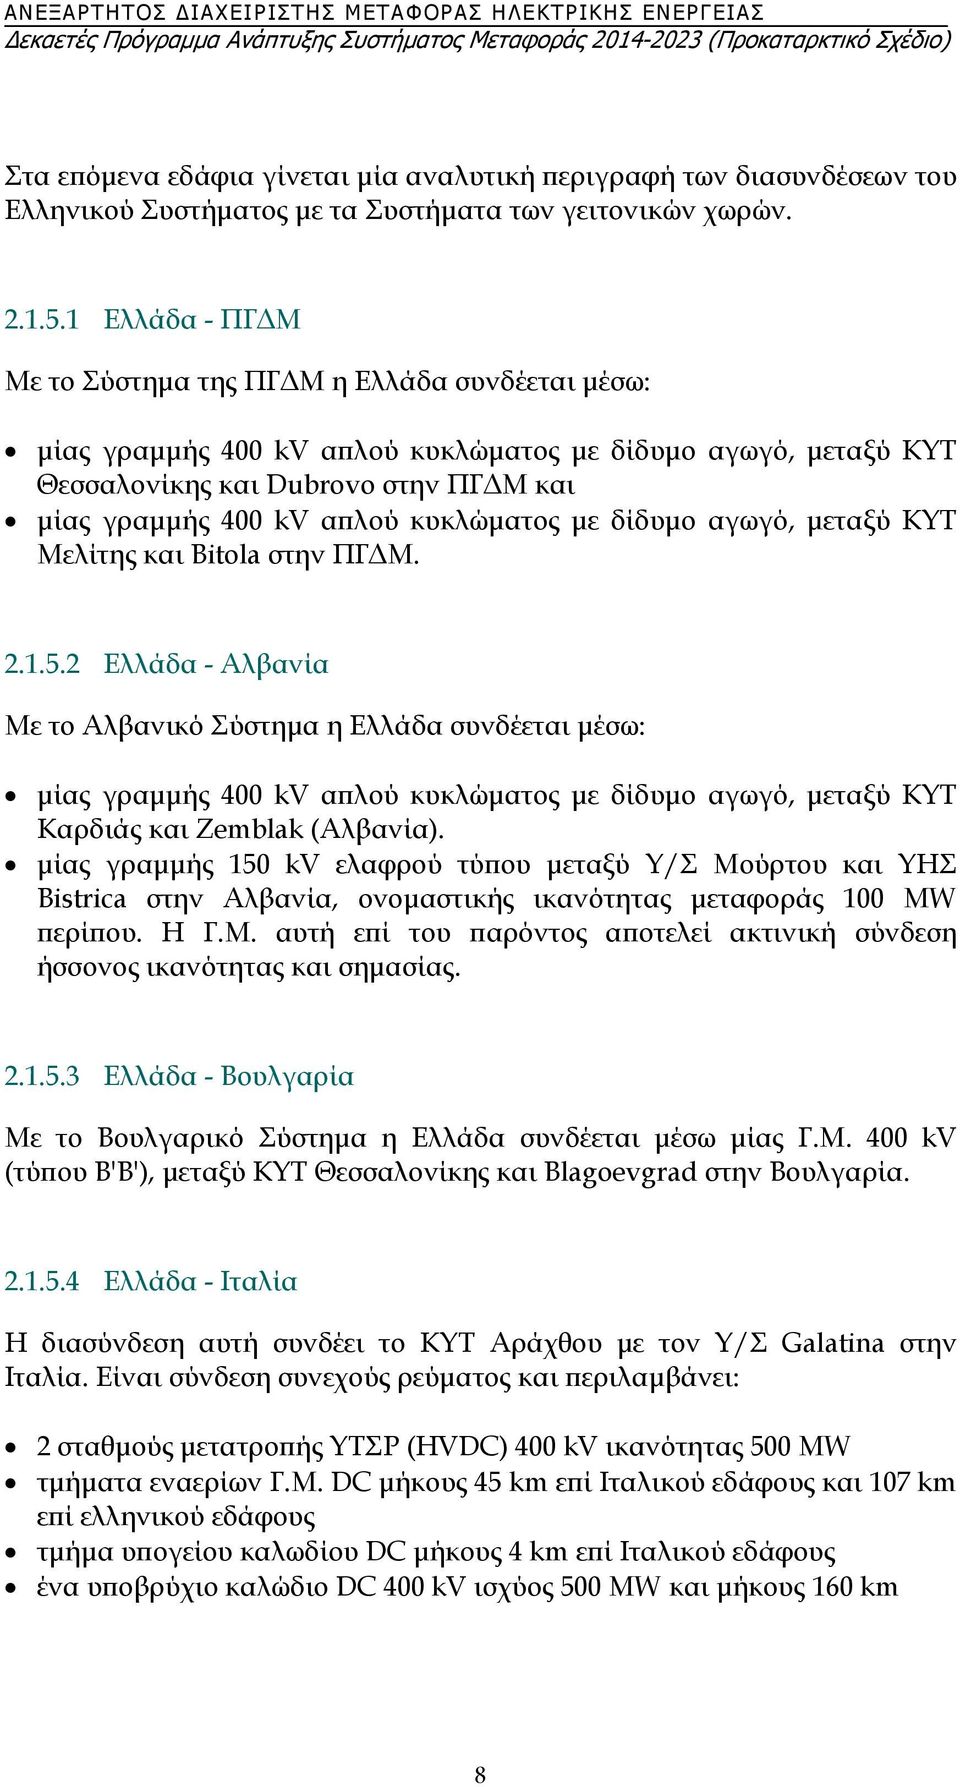 1 Ελλάδα - ΠΓΔΜ Με το Σύστημα της ΠΓΔΜ η Ελλάδα συνδέεται μέσω: μίας γραμμής 400 kv απλού κυκλώματος με δίδυμο αγωγό, μεταξύ ΚΥΤ Θεσσαλονίκης και Dubrovo στην ΠΓΔΜ και μίας γραμμής 400 kv απλού